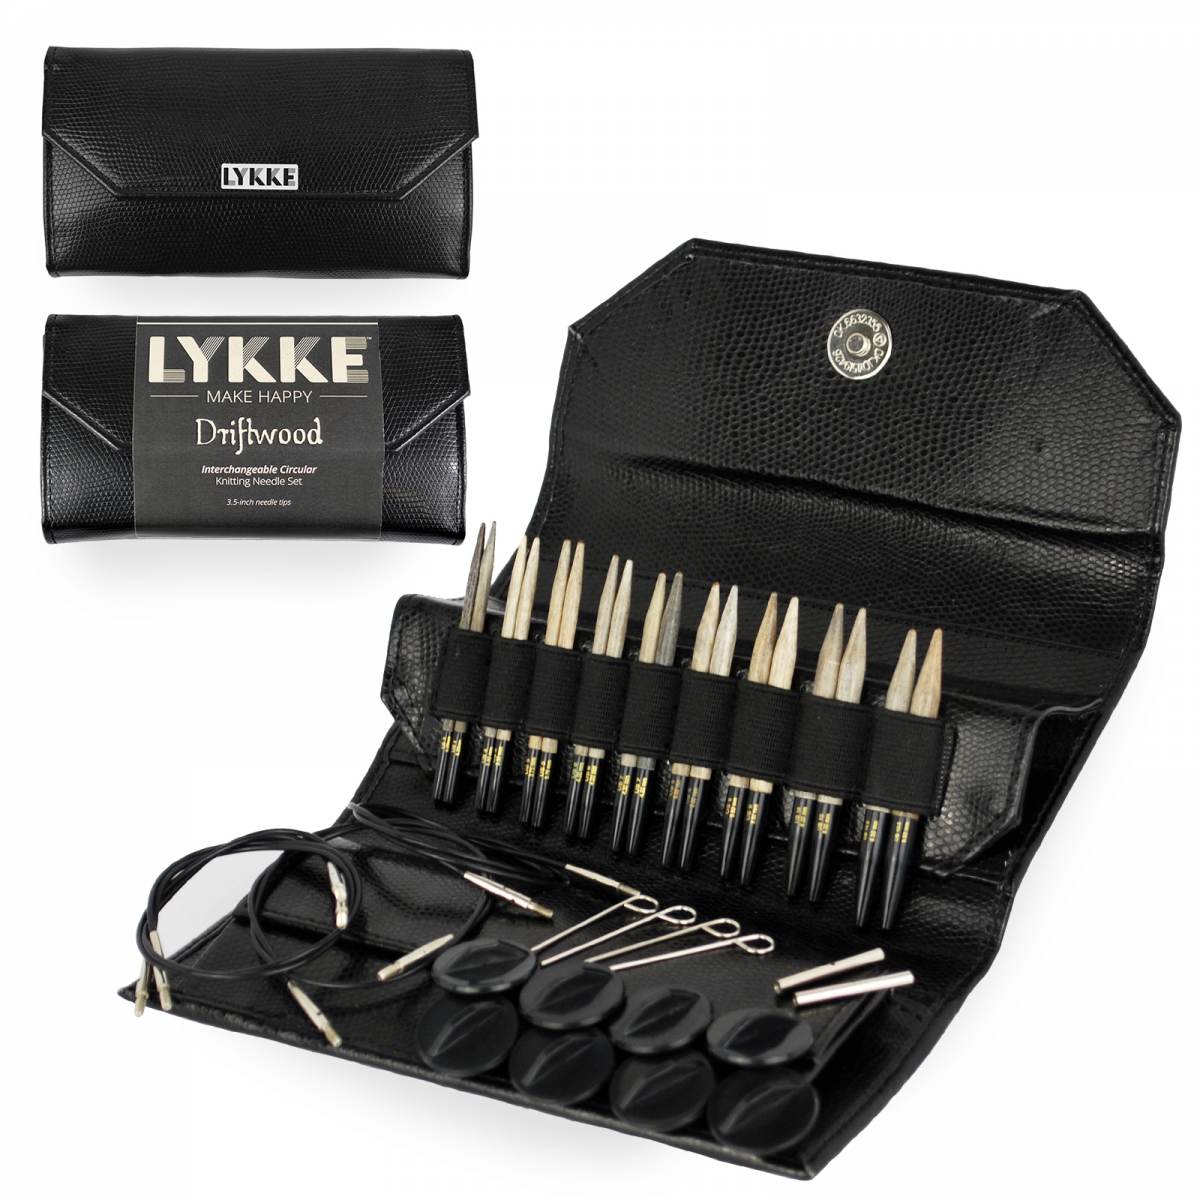 LYKKE Driftwood 3.5” Interchangeable Needle Set